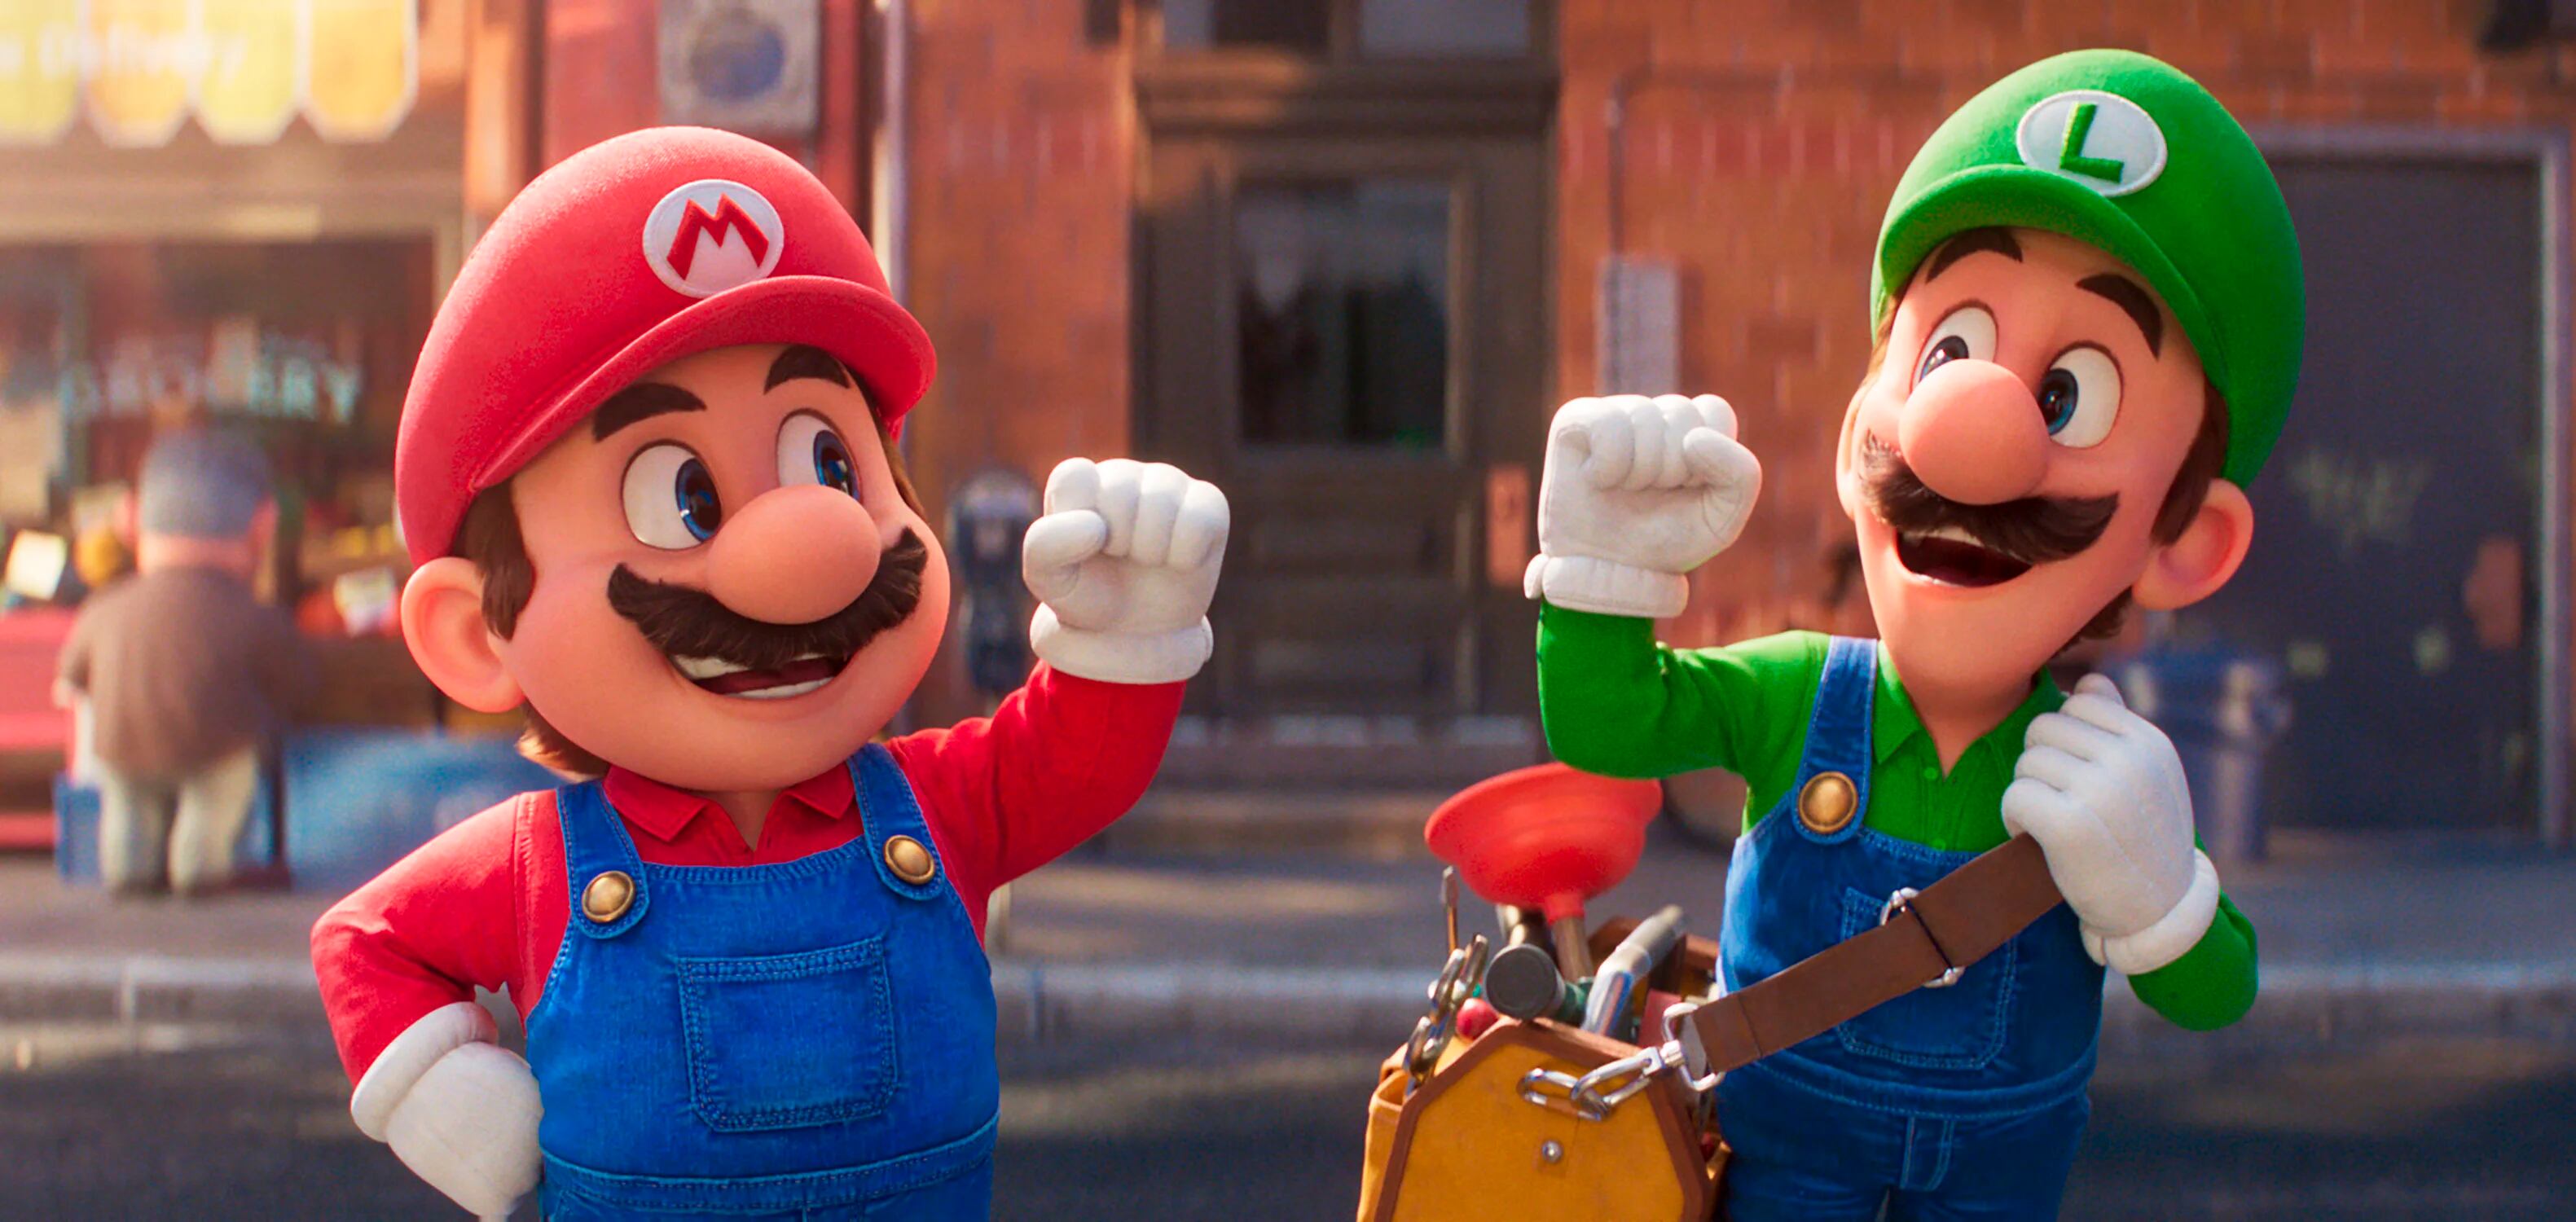 Producción animada basada en el videojuego clásico "Mario Bros". (Universal Studios)